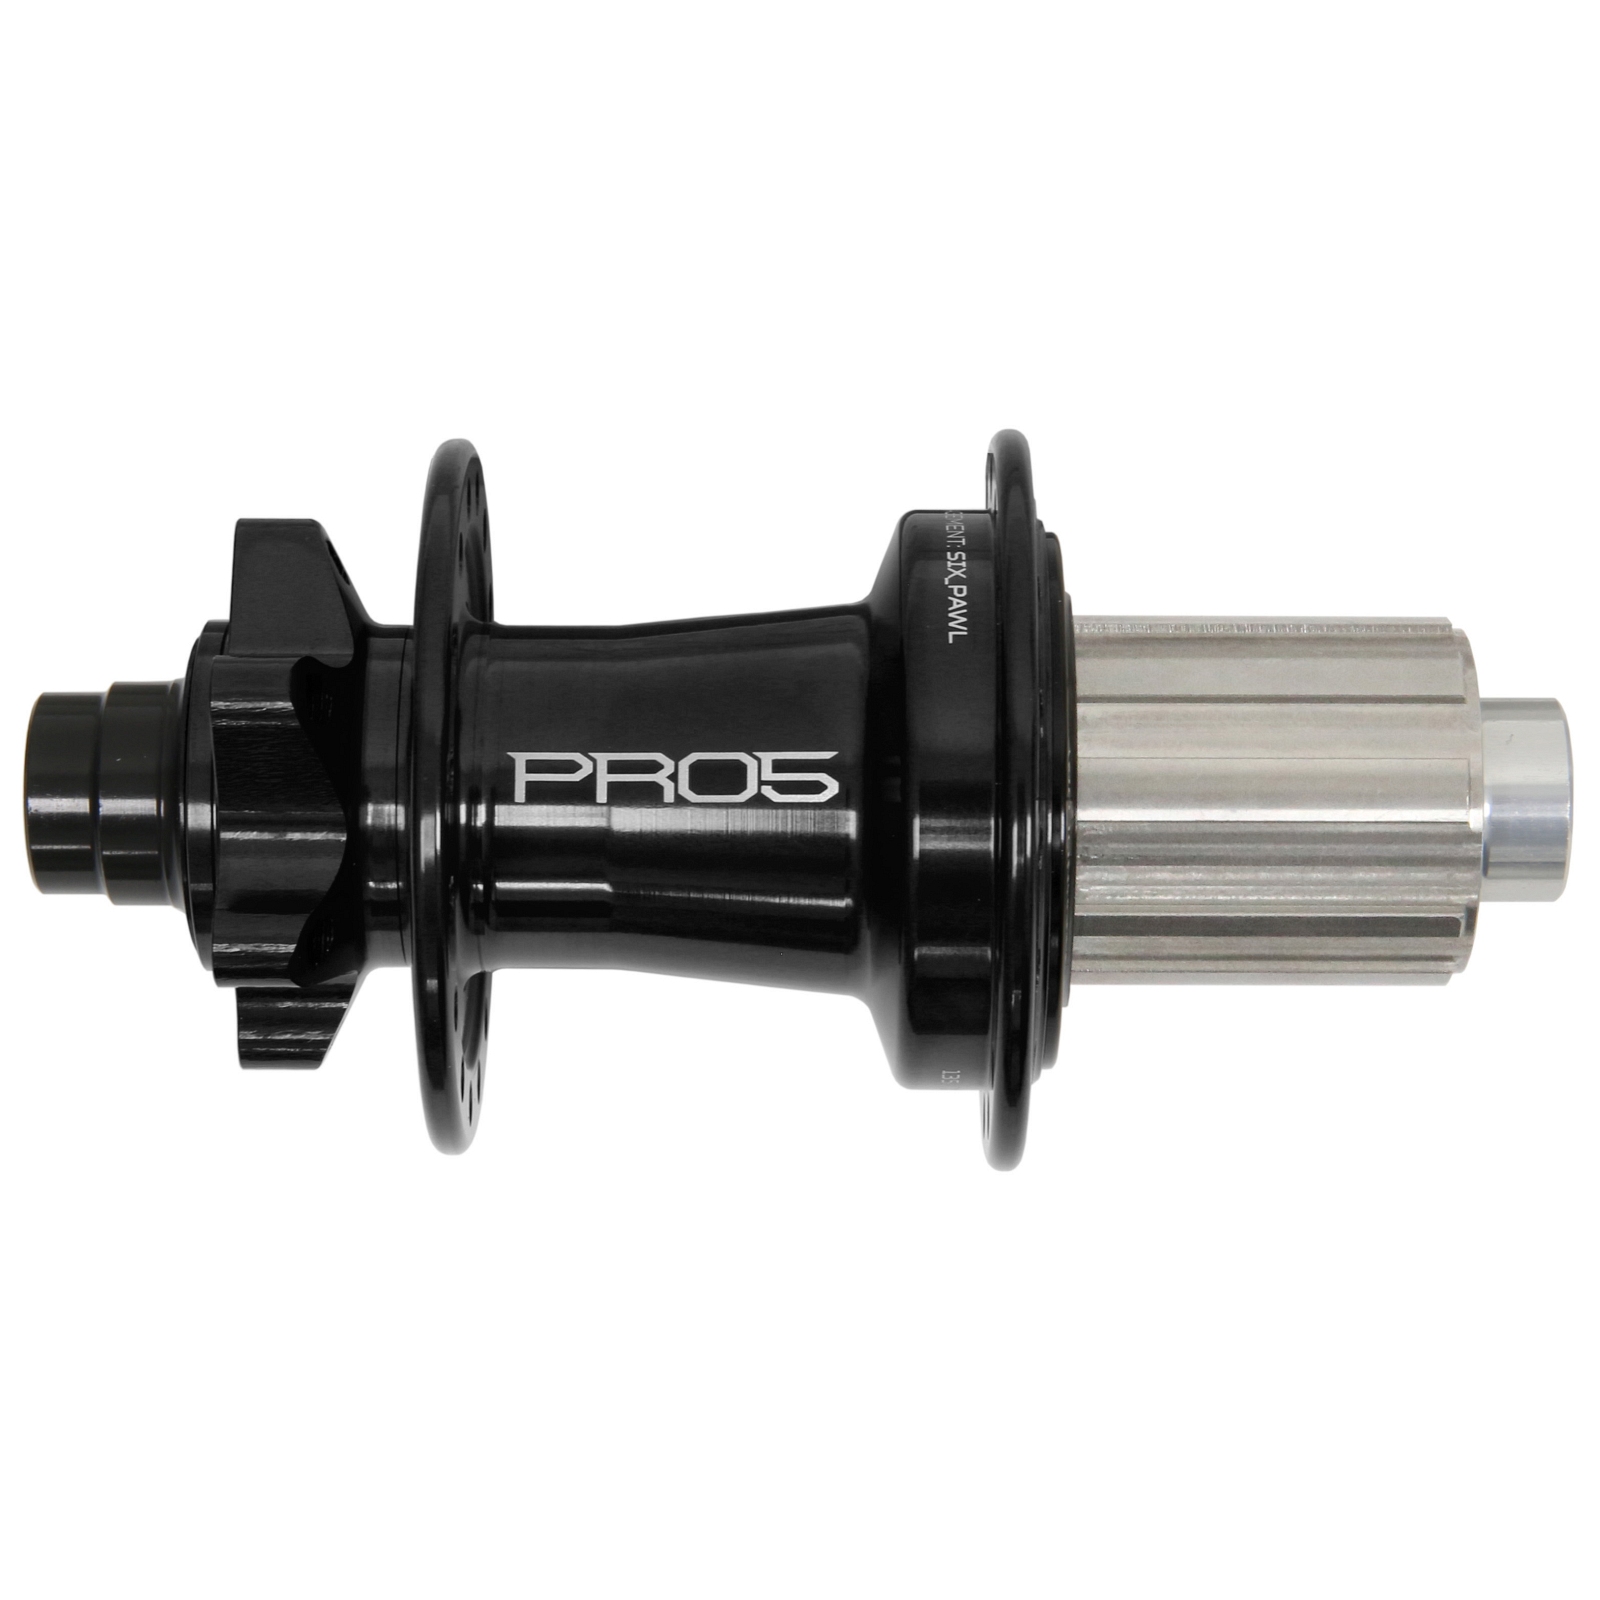 Productfoto van Hope Pro 5 Achterwielnaaf - 6-Bolt - 12x142mm | Shimano HG (Staal) - zwart